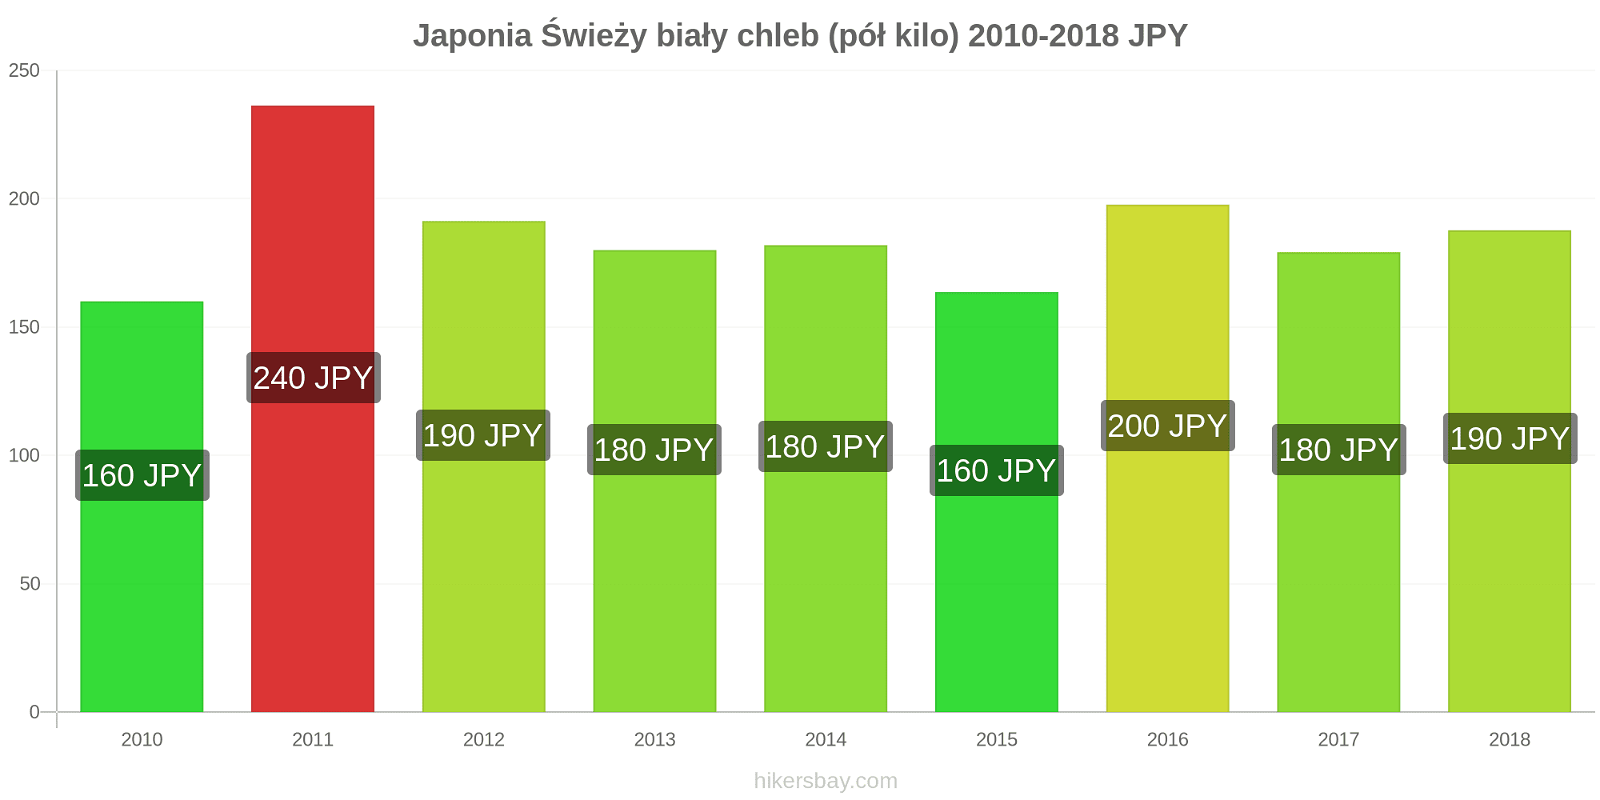 Japonia zmiany cen Chleb pół kilo hikersbay.com